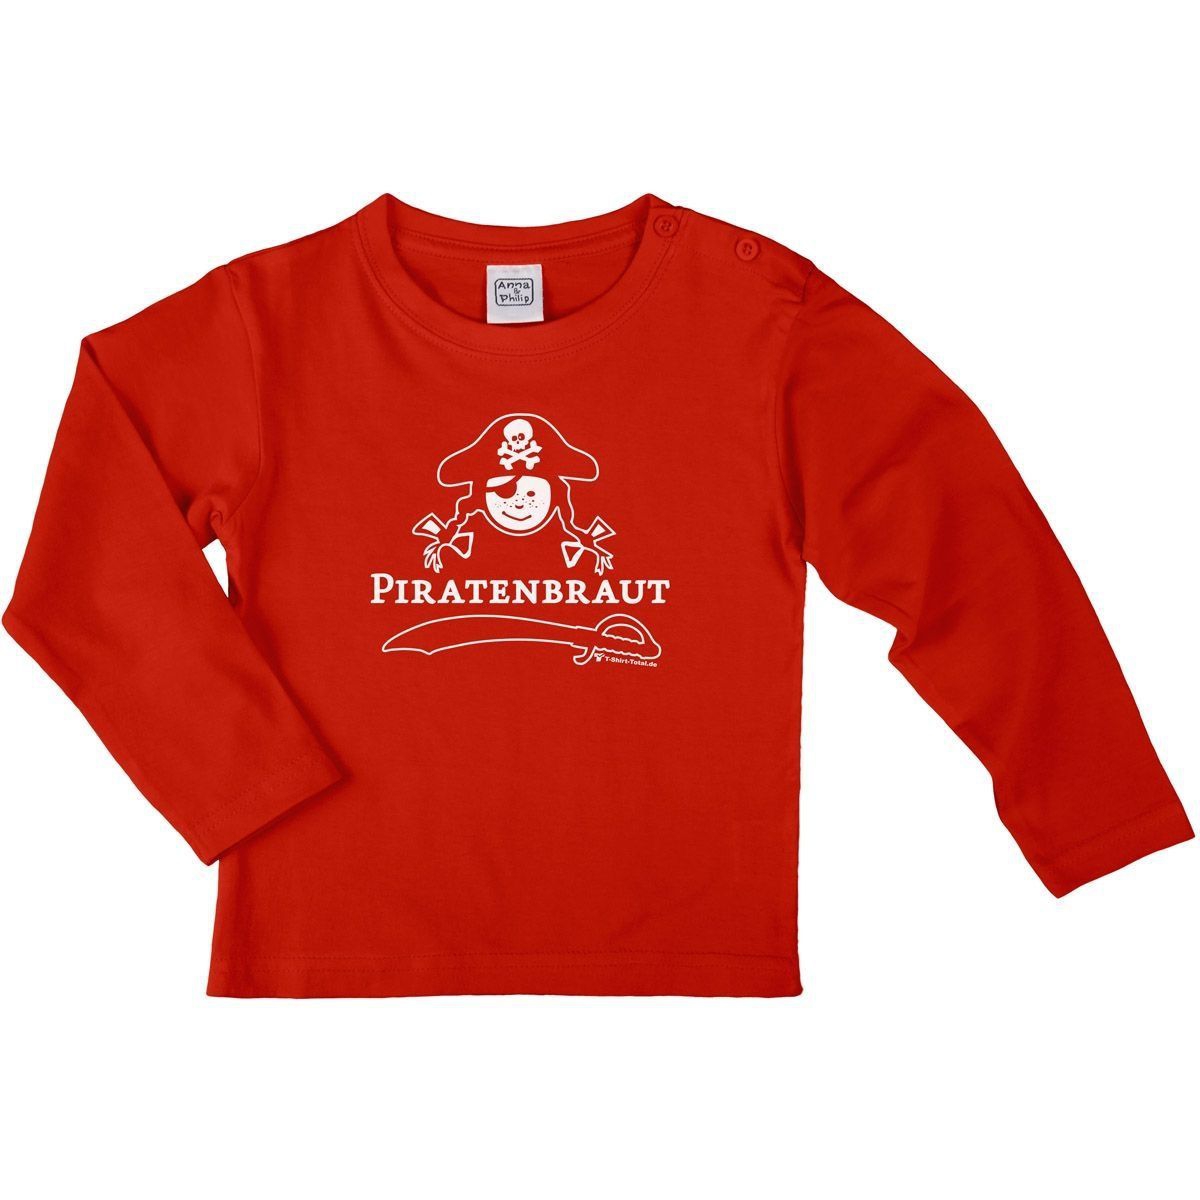 Piratenbraut Kinder Langarm Shirt rot 110 / 116